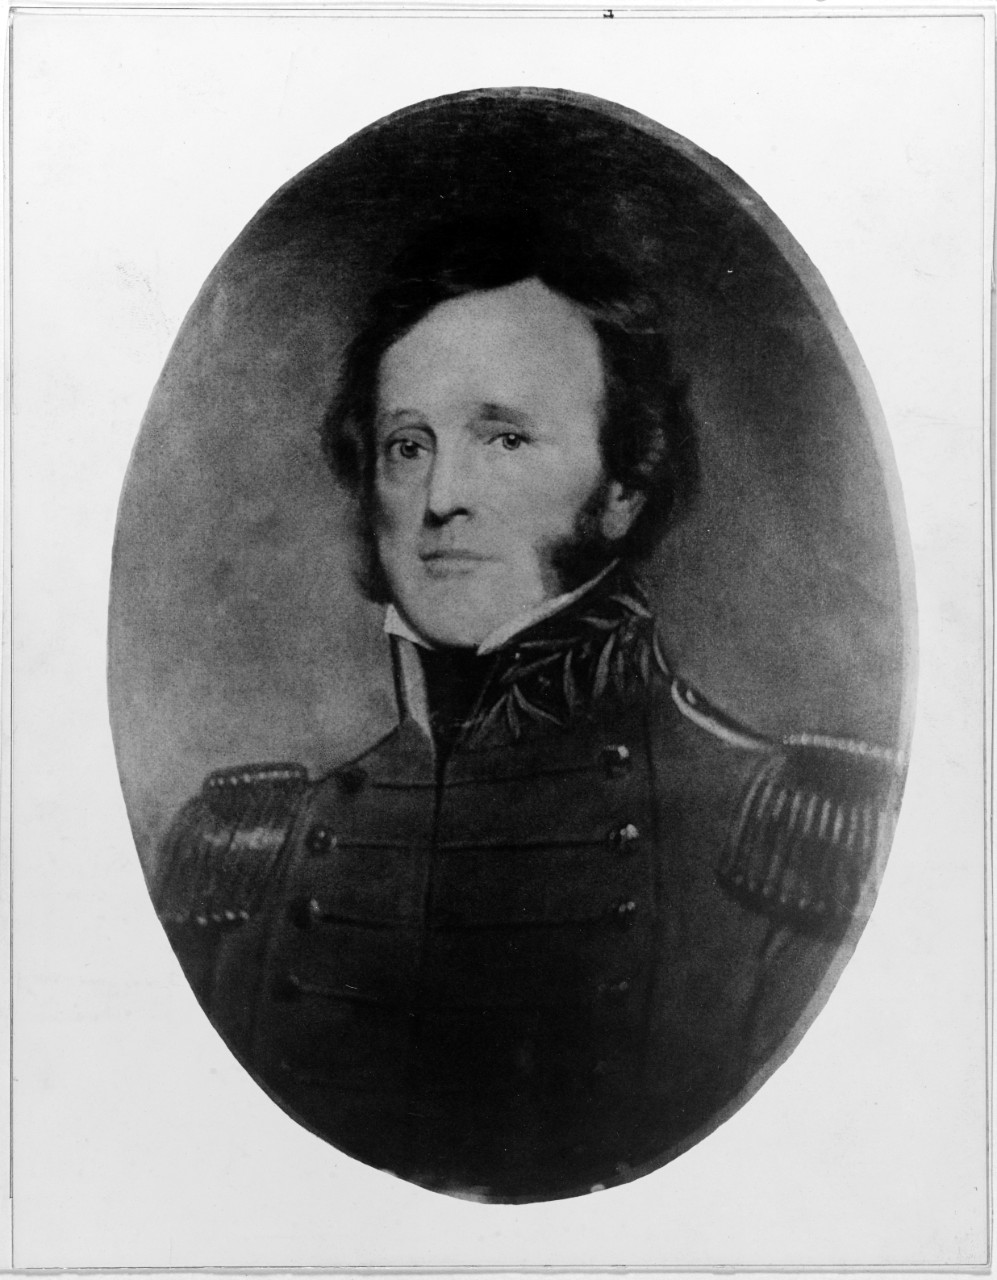 John Downes, Commodore, USN